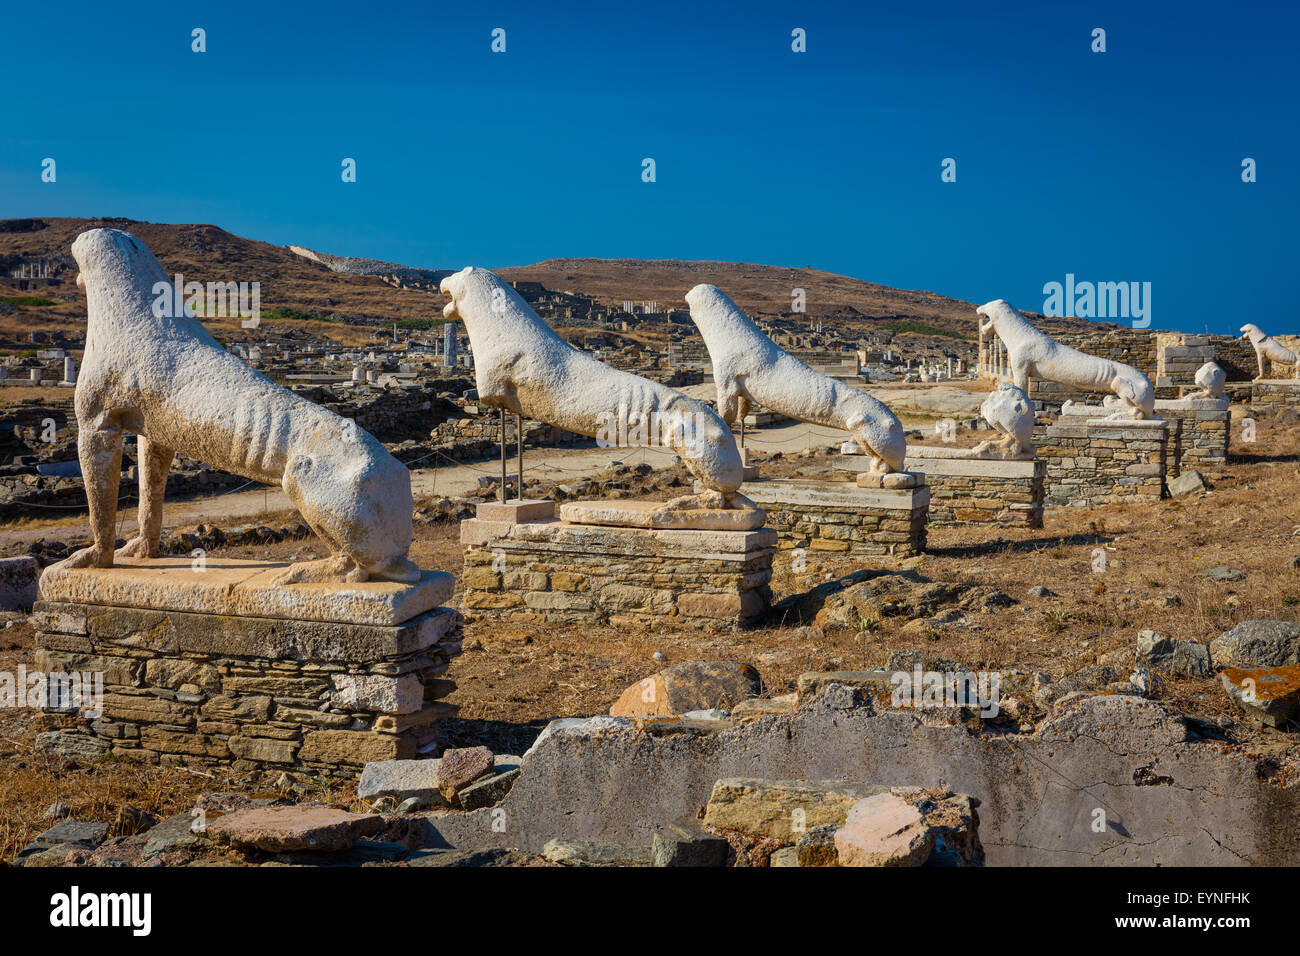 L'isola di Delos, vicino a Mykonos, vicino al centro dell'arcipelago delle Cicladi, è una delle più importanti figure mitologiche, histo Foto Stock